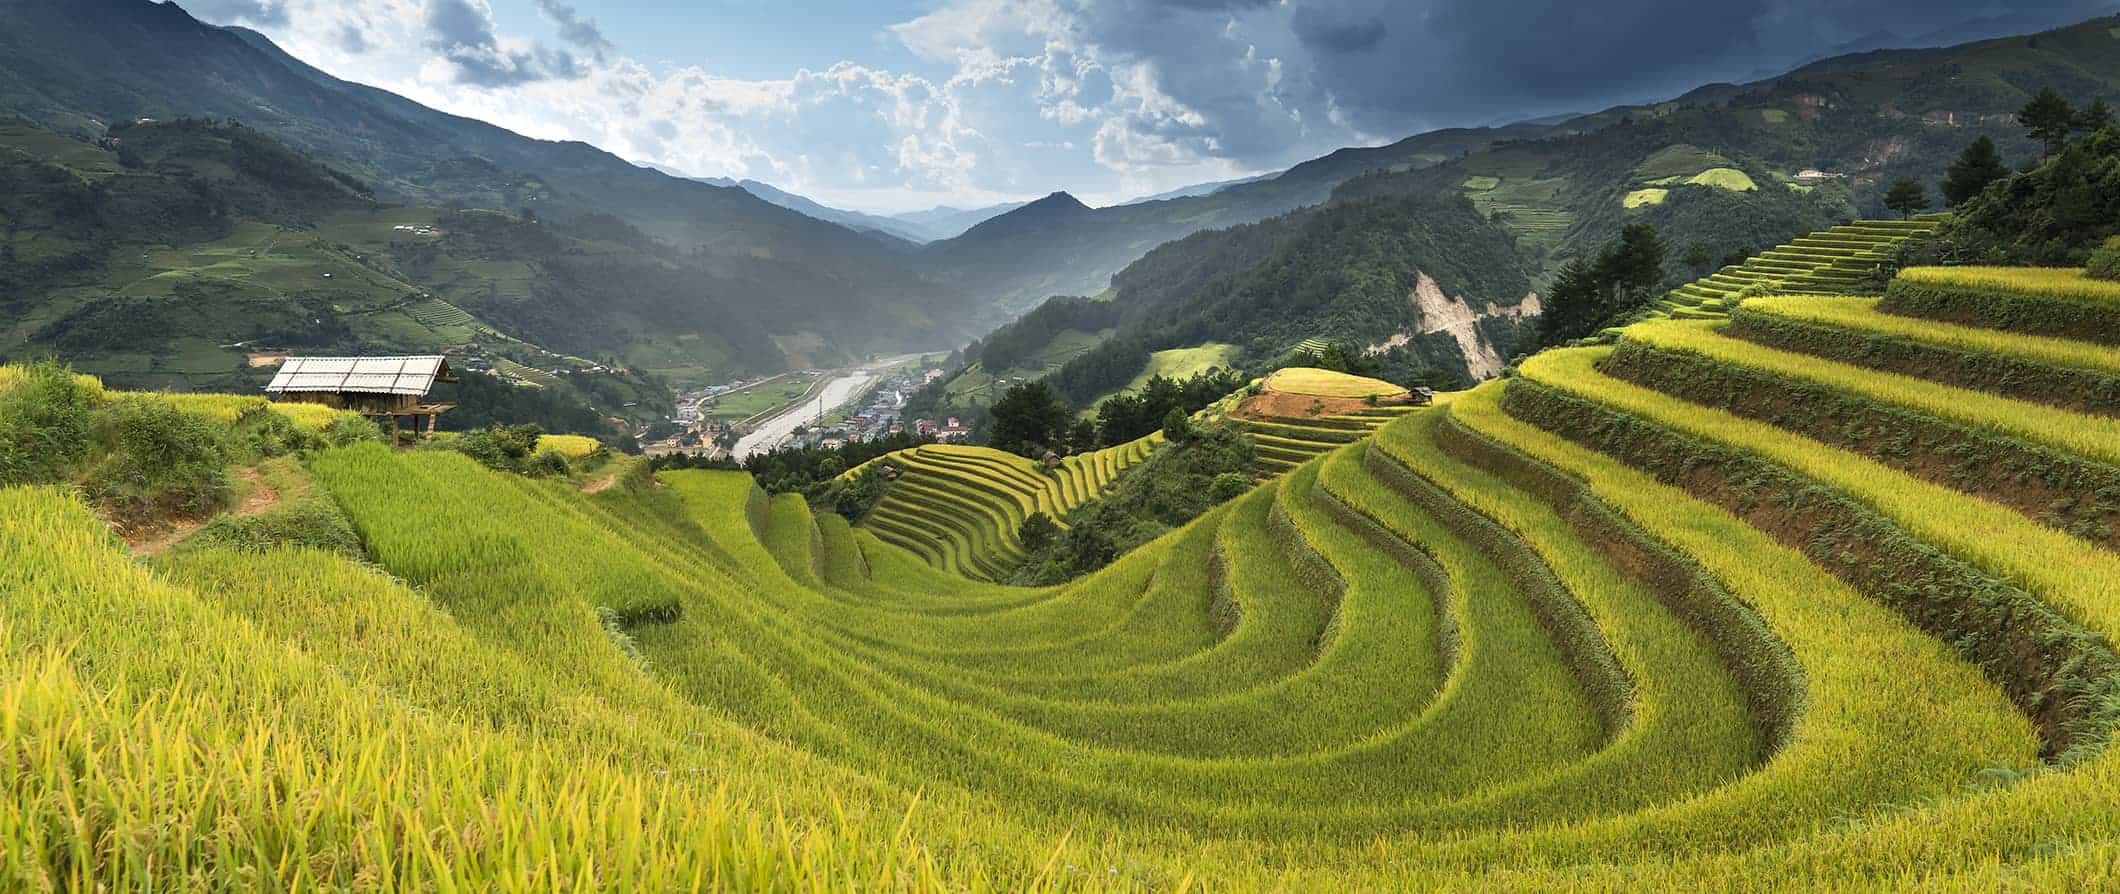 Terraços de arroz no Vietnã cercados por colinas e montanhas em um dia ensolarado